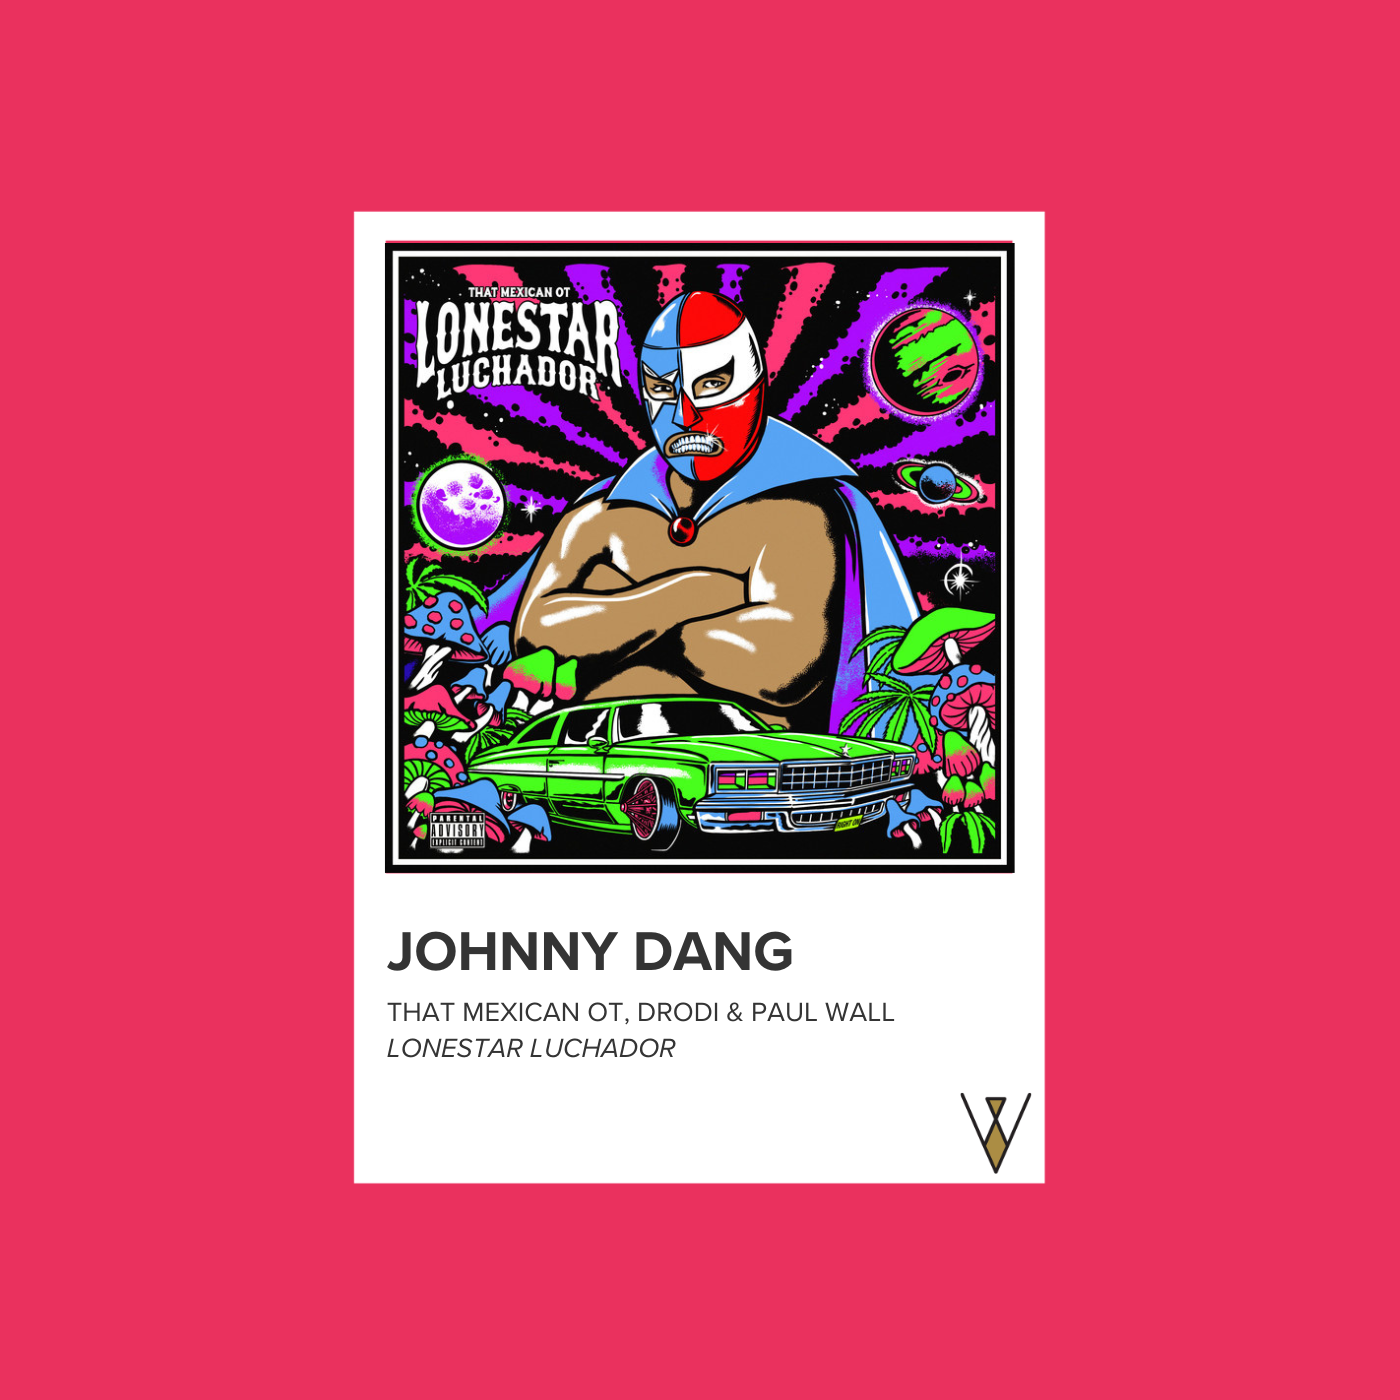 5. "Johnny Dang"